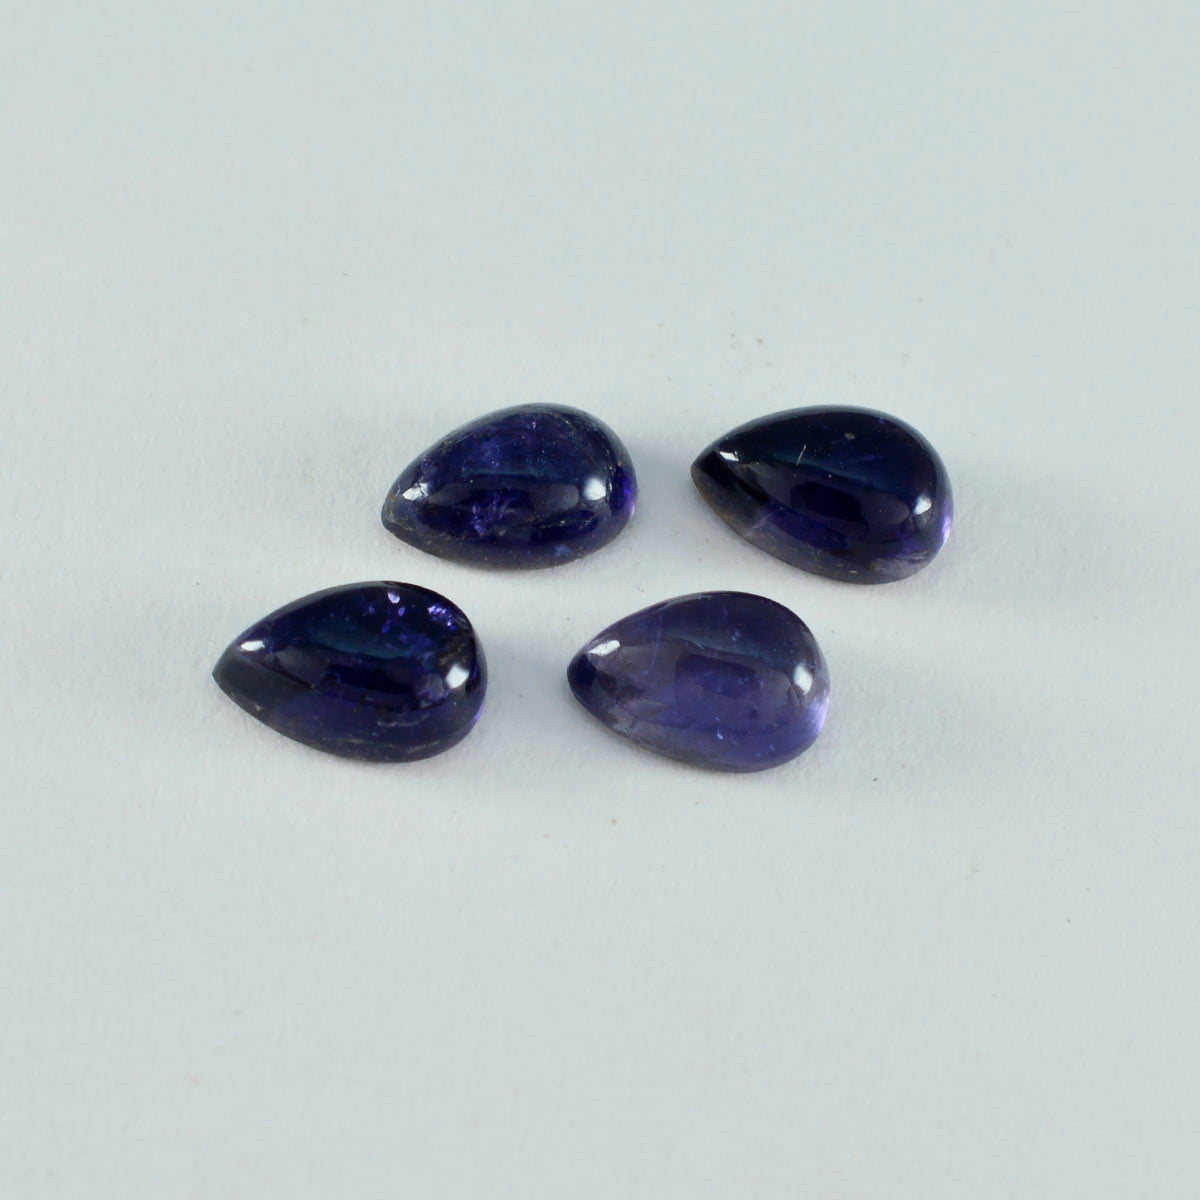 riyogems 1 шт. синий иолит кабошон 6x9 мм грушевидная форма сладкий качественный драгоценный камень